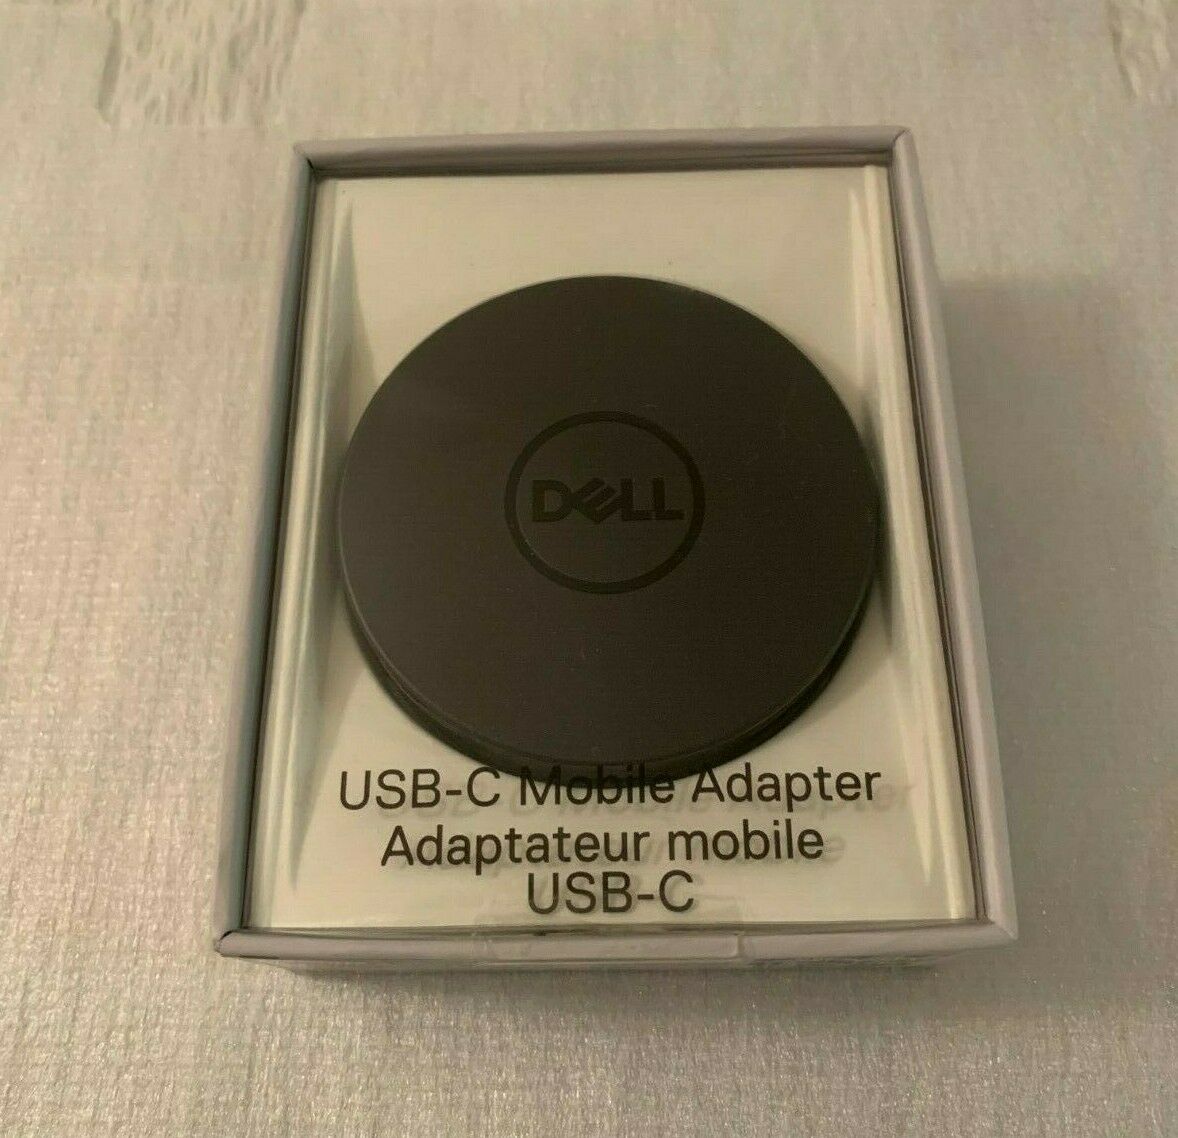 Dell USB-C to HDMI-VGA-Ethernet-USB 4K Mobile Adapter DA300.